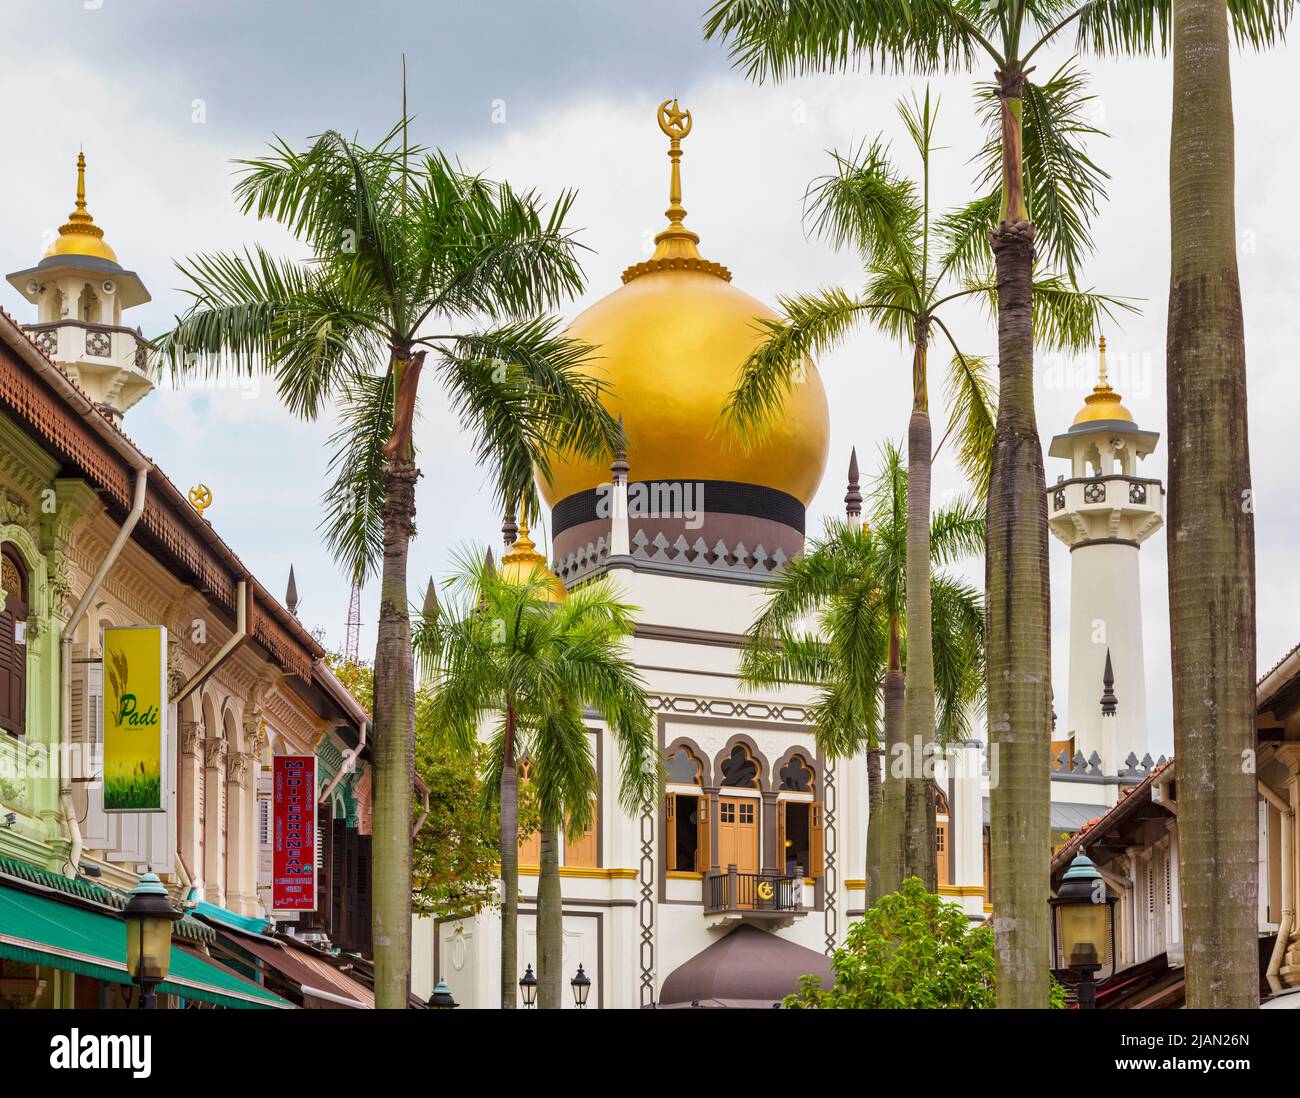 La mosquée du Sultan, ou Sultan Masjid, vue de la rue Bussorah, République de Singapour. La mosquée du Sultan est la plus grande de Singapour et un monum national Banque D'Images